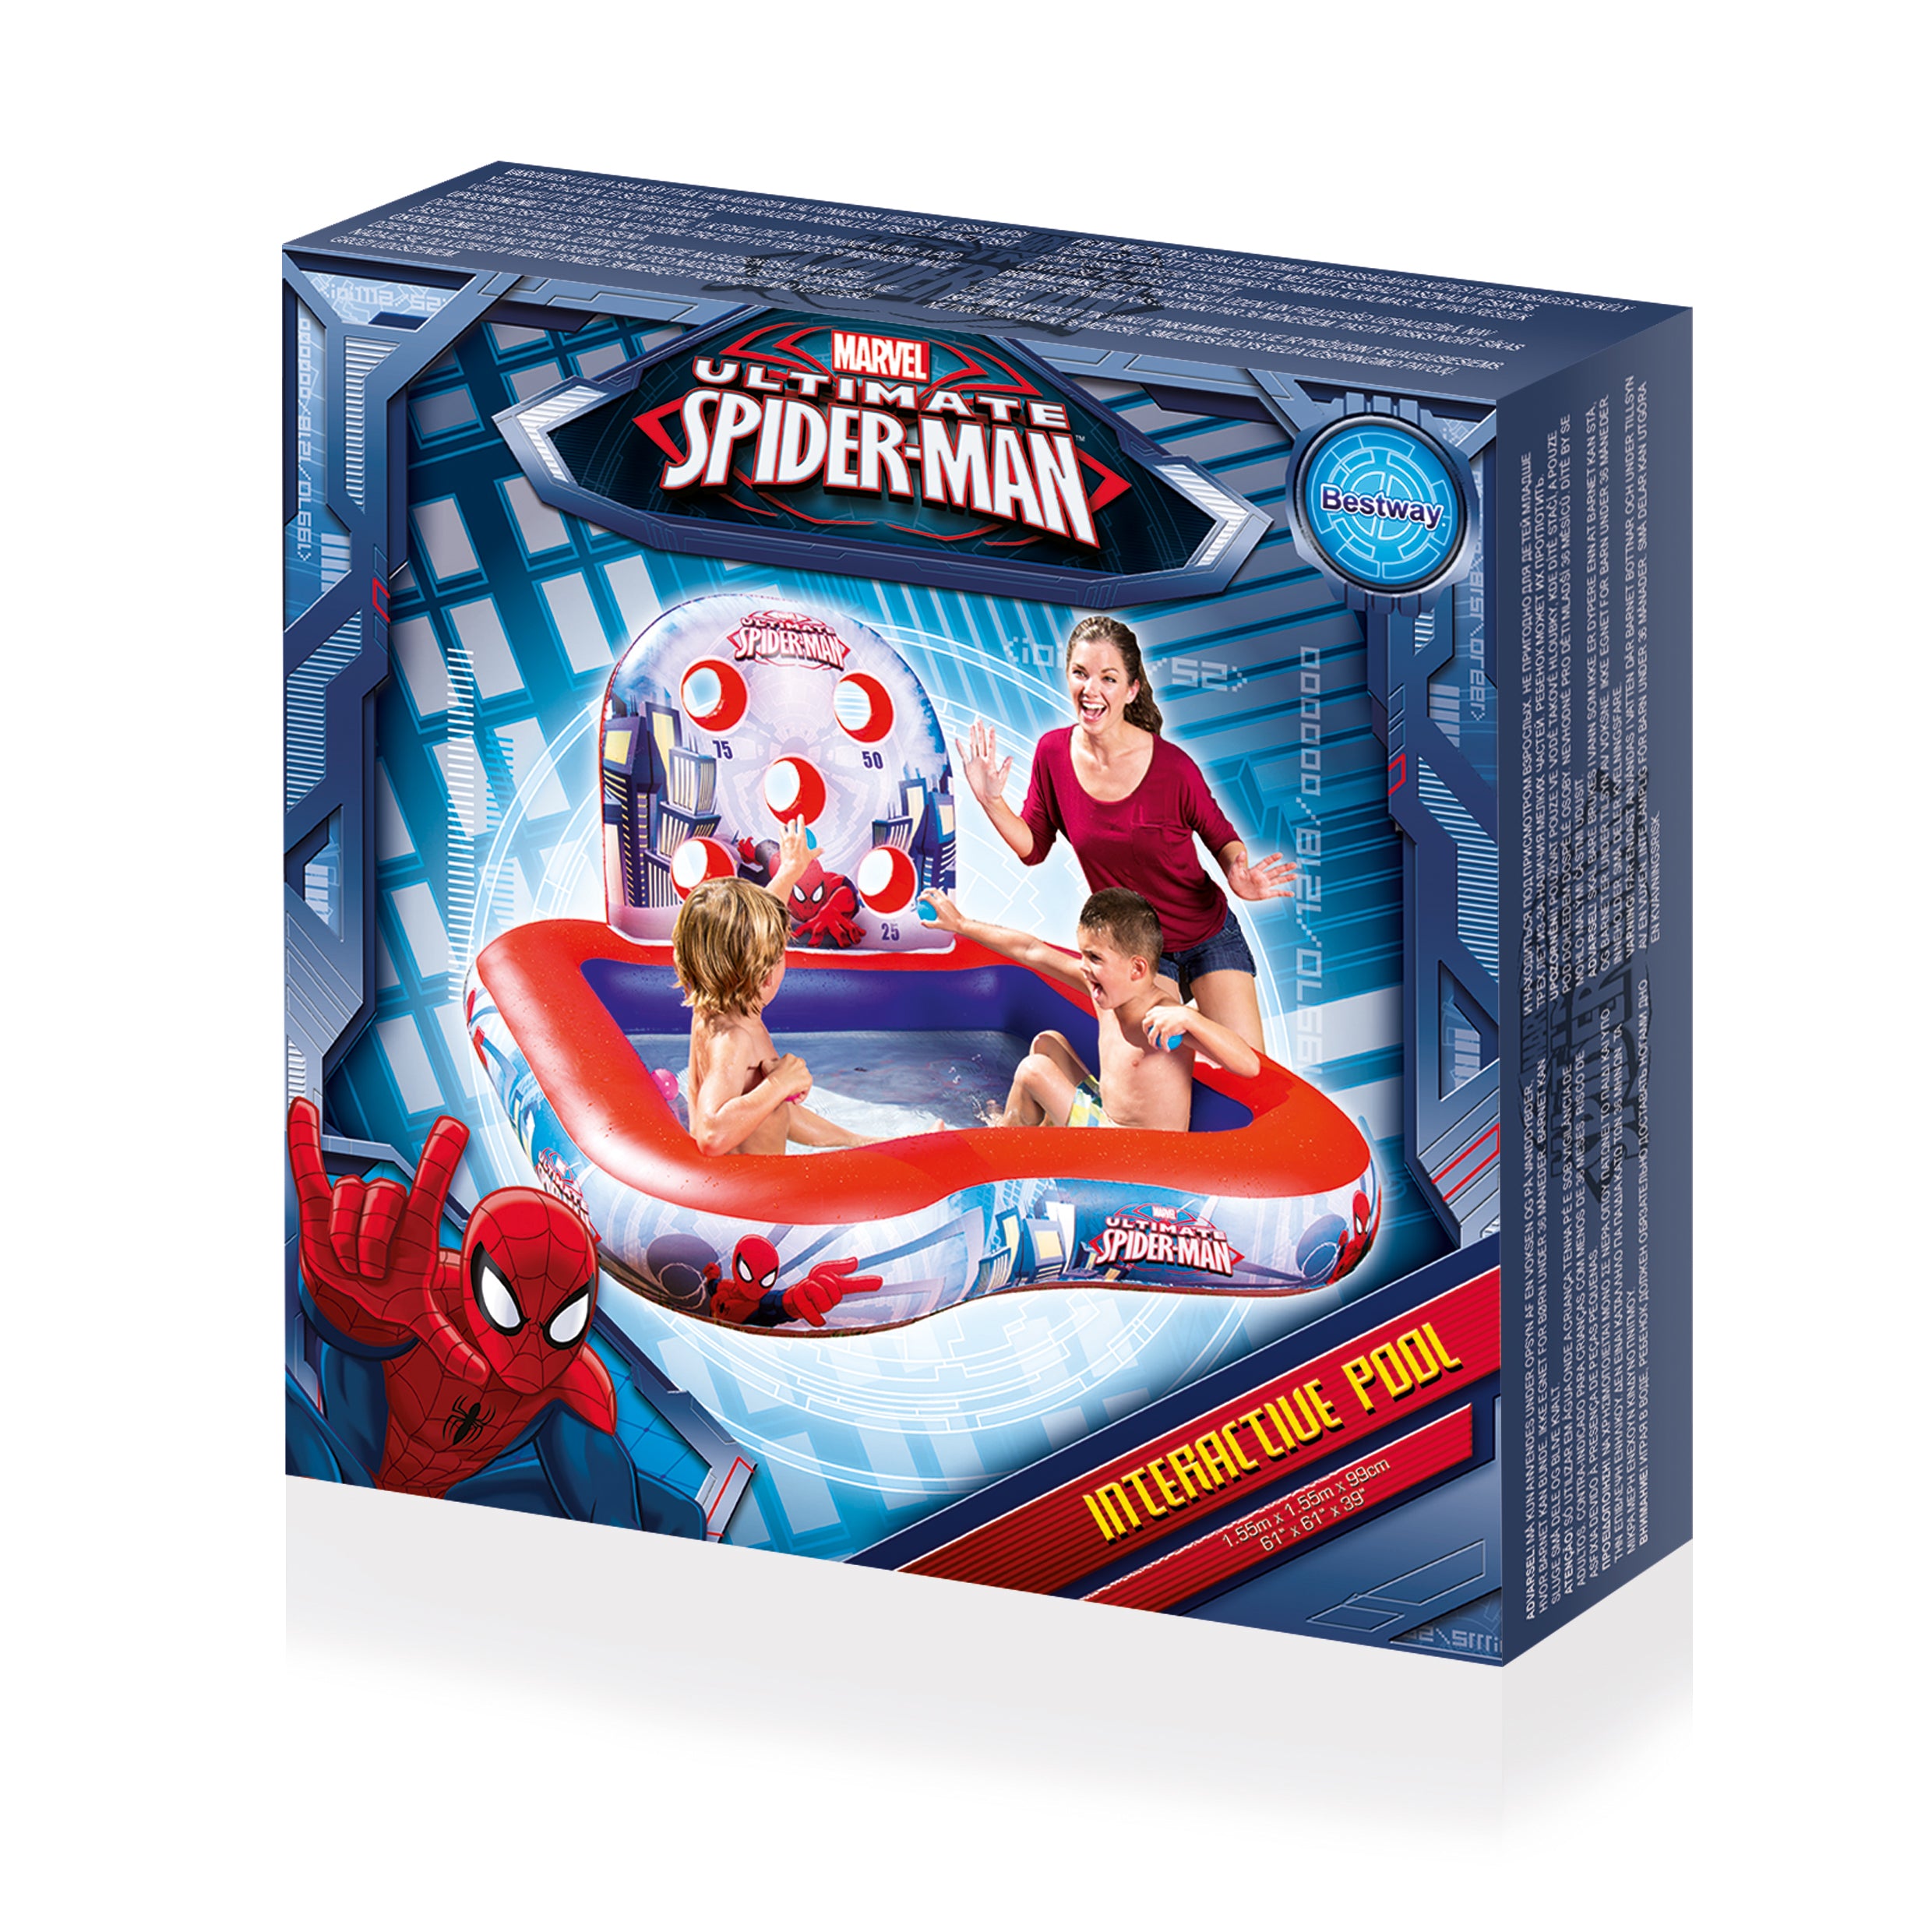 Spider-Man Interactive Play Center (61" x 61" x 39"/1.55m x 1.55m x 99cm)